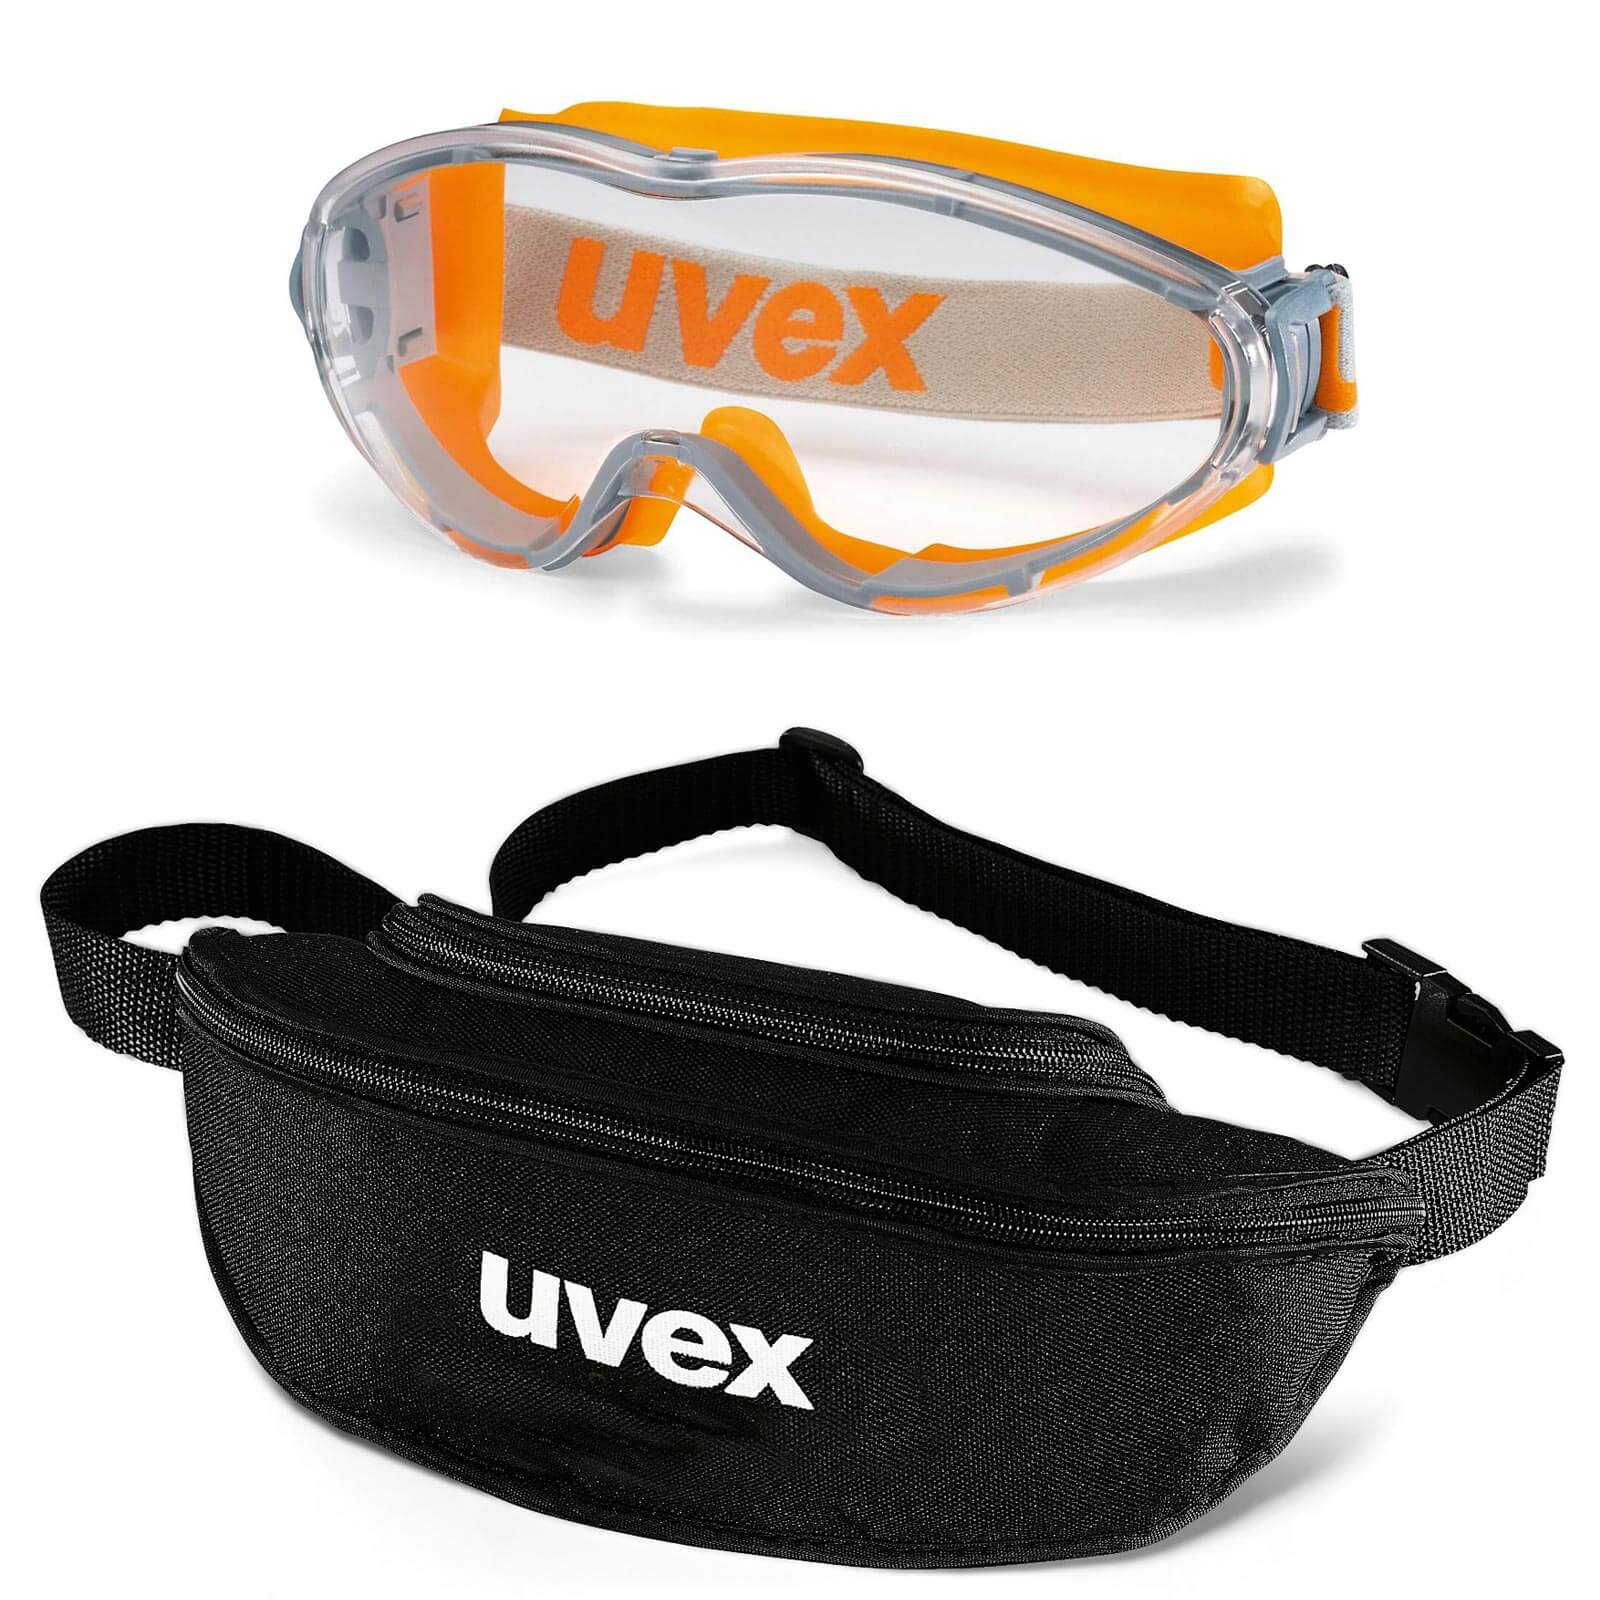 UVEX Vollsichtbrille ultrasonic 9302 - Set inkl. Textil-Etui - 9302285 / 9302245 Farbe:orange-grau / klar von Uvex